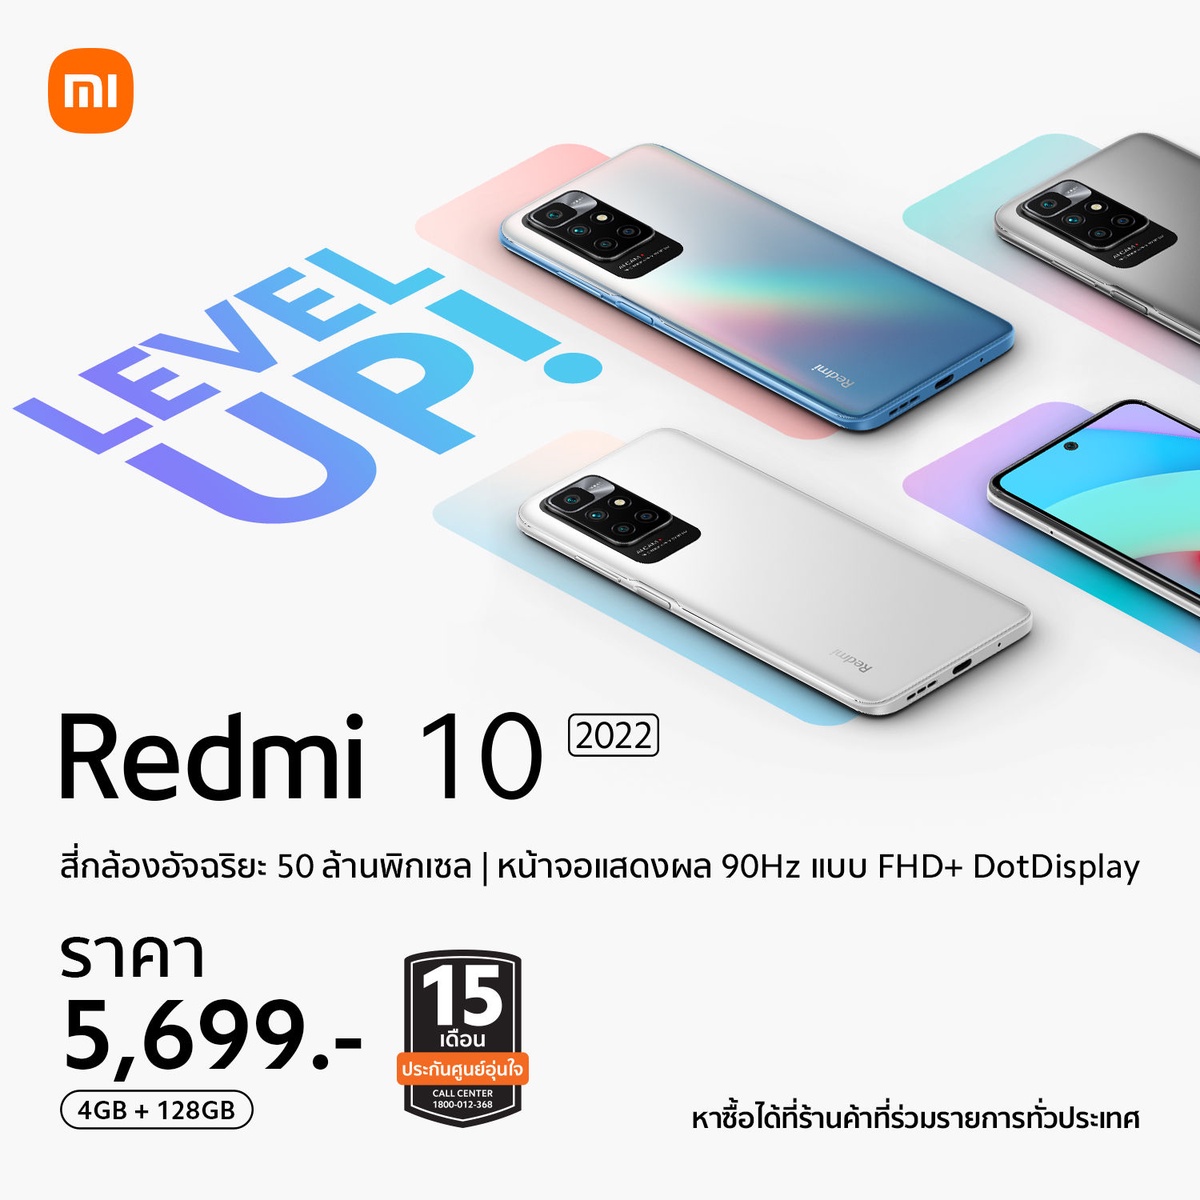 เสียวหมี่ประกาศวางจำหน่าย Redmi 10 2022 และ Redmi 10A สมาร์ทโฟนระดับเริ่มต้น ในราคาเพียง 5,699 บาท และ 3,999 บาท!